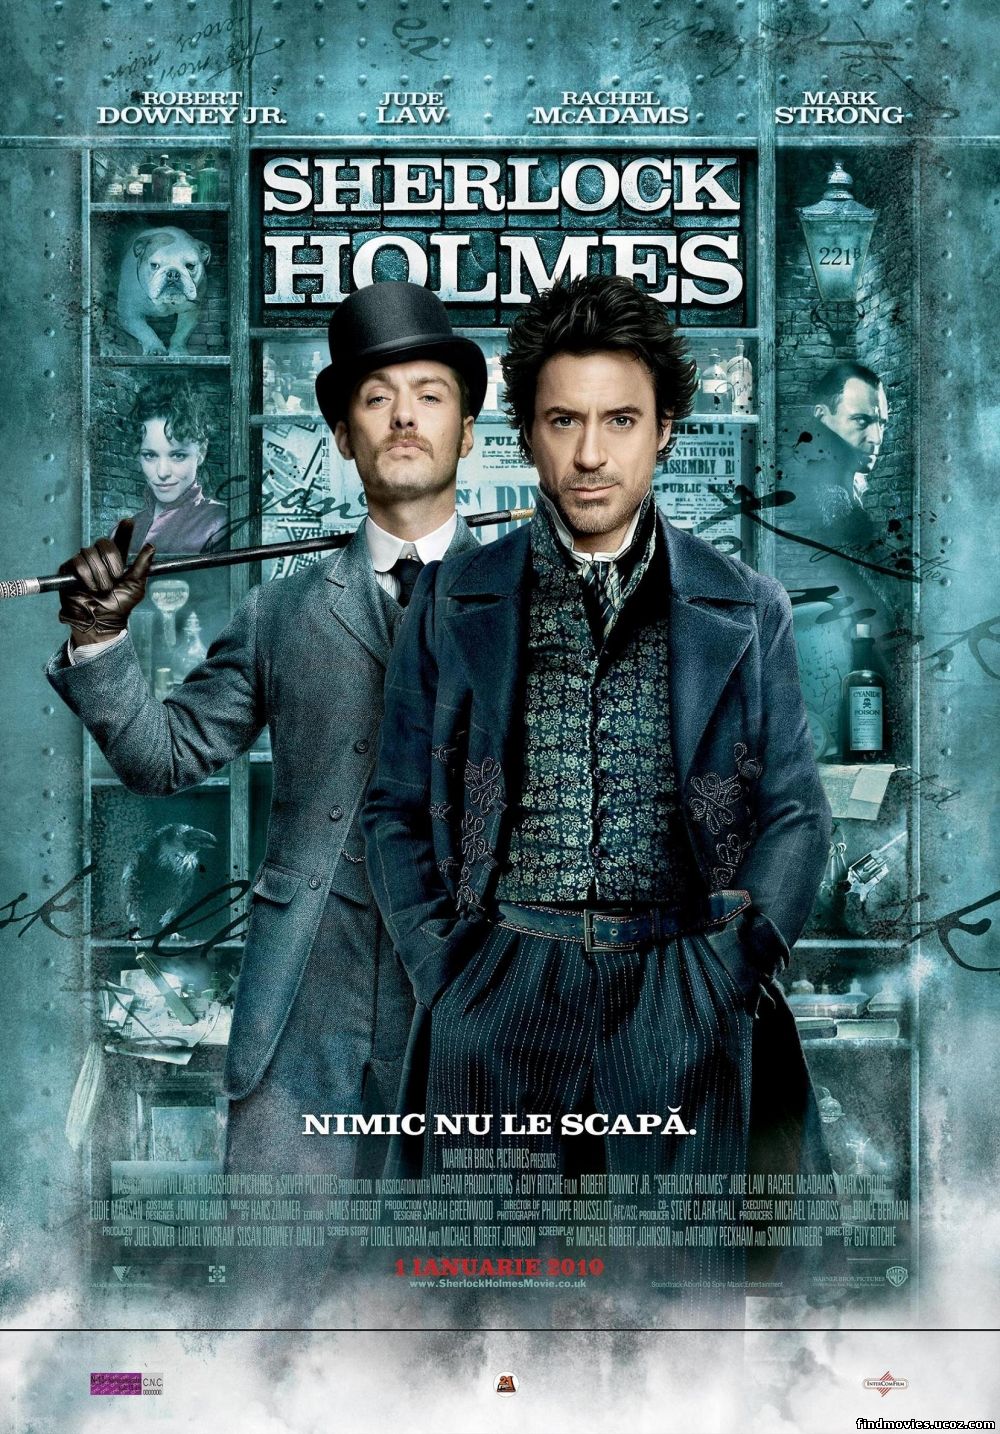 შერლოკ ჰოლმსი / Sherlock Holmes